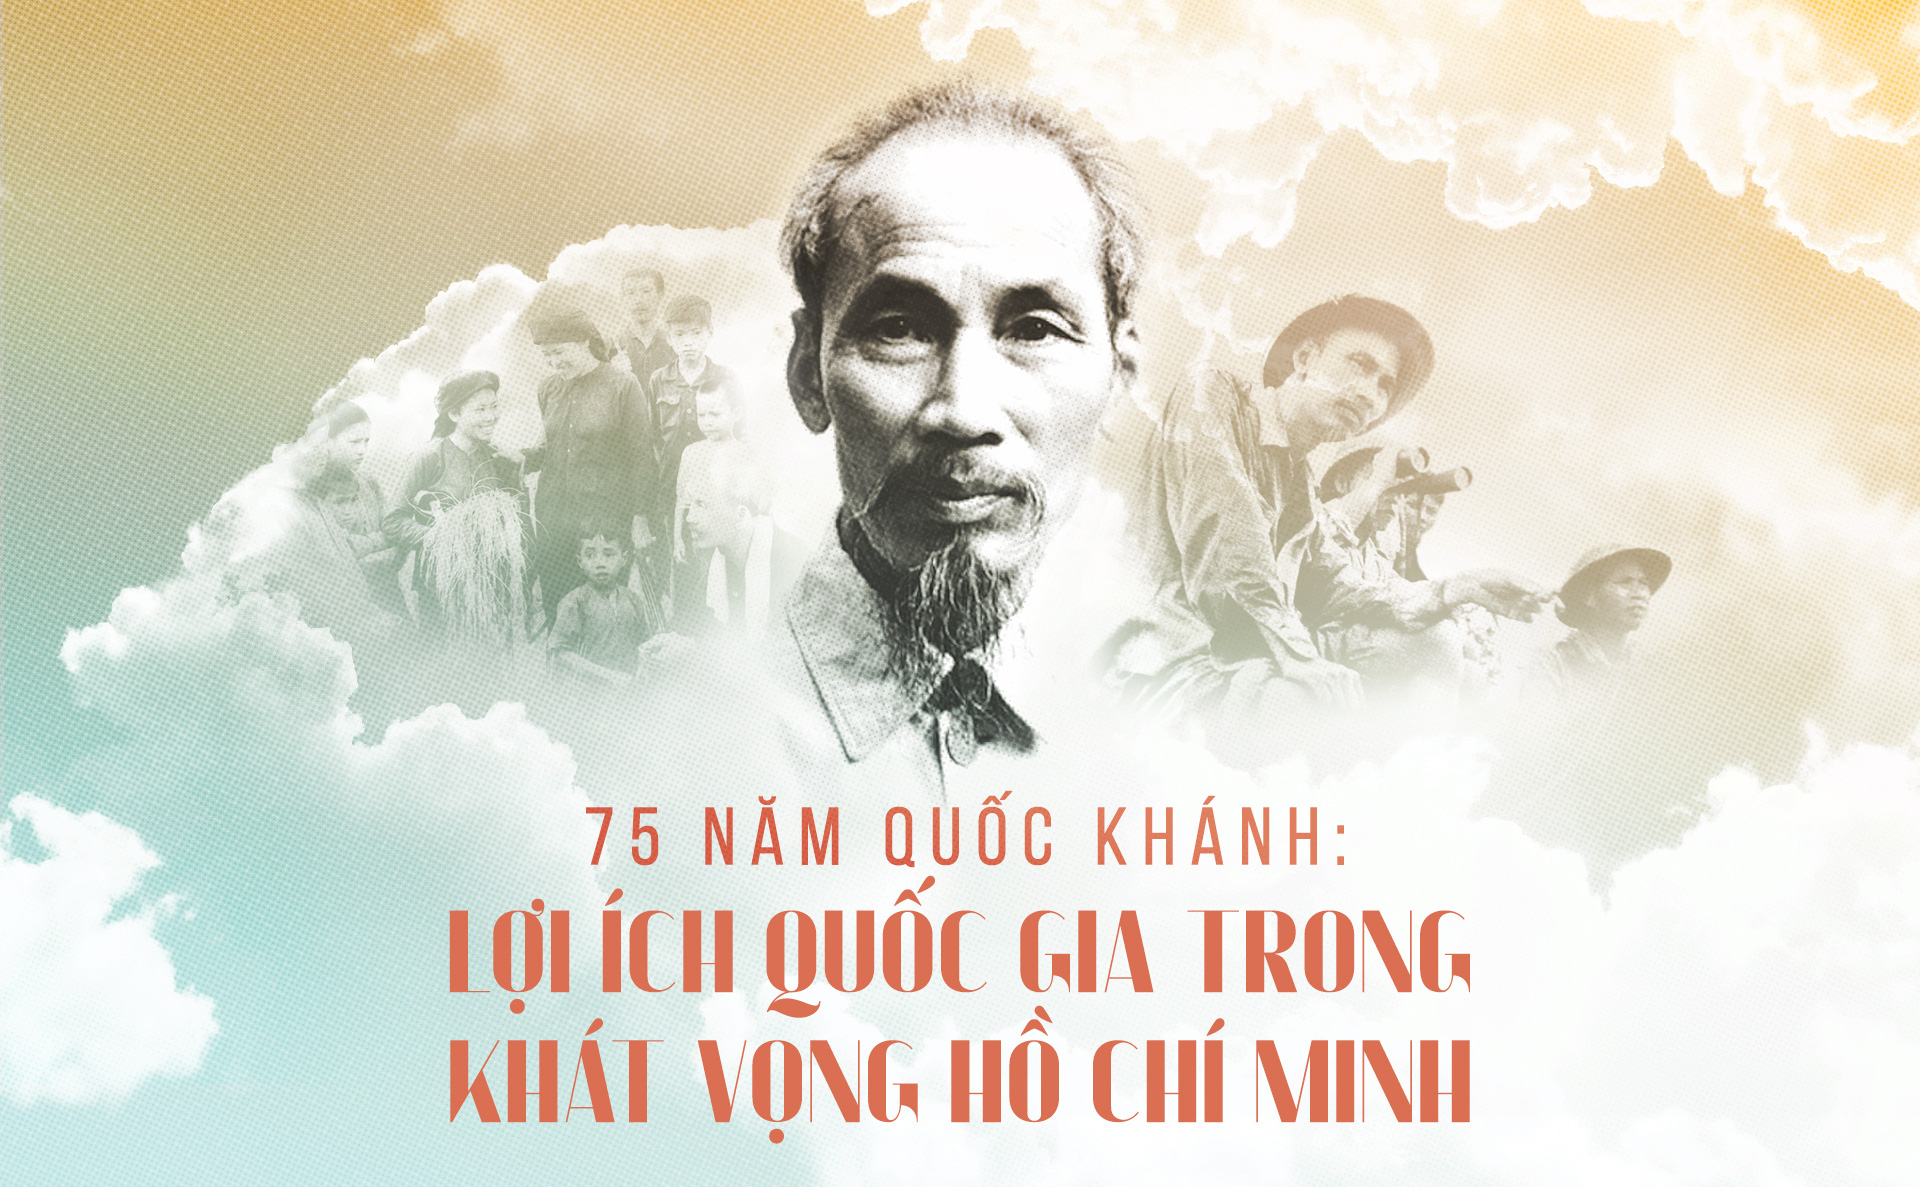 75 năm Quốc khánh: Lợi ích quốc gia trong khát vọng Hồ Chí Minh